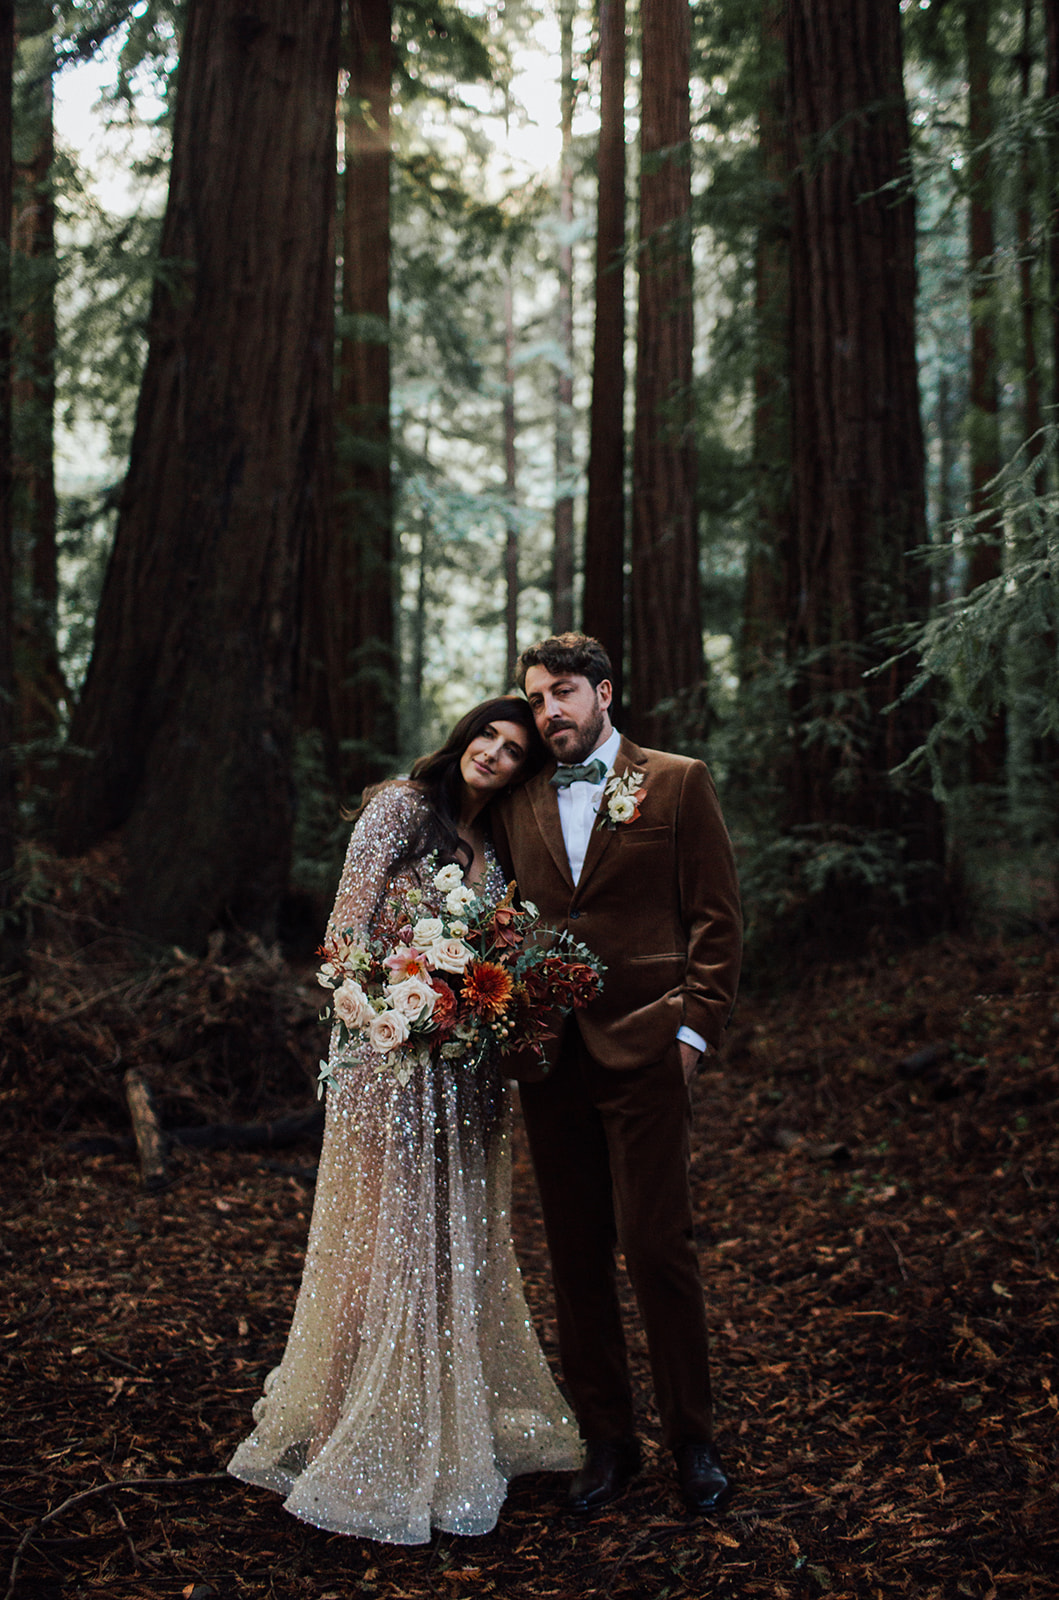 Romantic Big Sur elopement nestled underneath the Redwoods